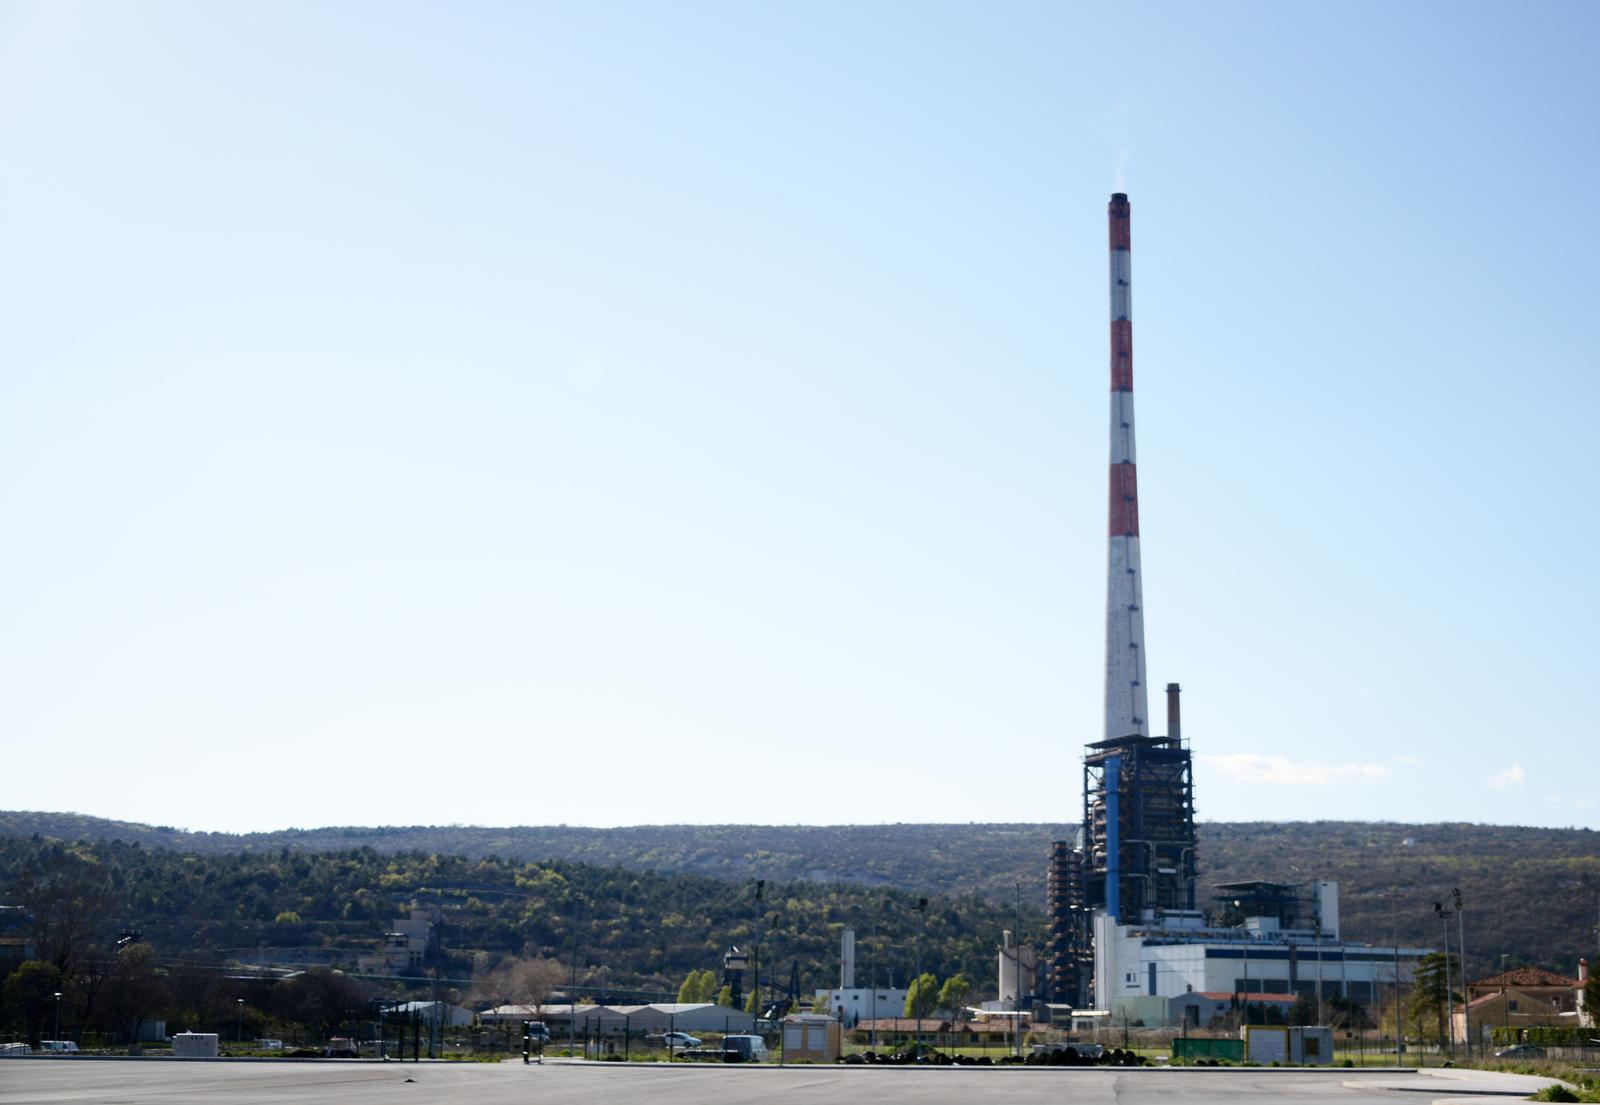 07.08.2021., Plomin - Termoelektrana Plomin jedina je aktivna termoelektrana na ugljen u Hrvatskoj. Zbog inicijative Europske unije o Sustava trgovanja emisijama stakleničkih plinova, termoelektrana će morati promijeniti uvjete za prestanak korištenja ugljena u proizvodnji električne energije.rPhoto: Sasa Miljevic / PIXSELL